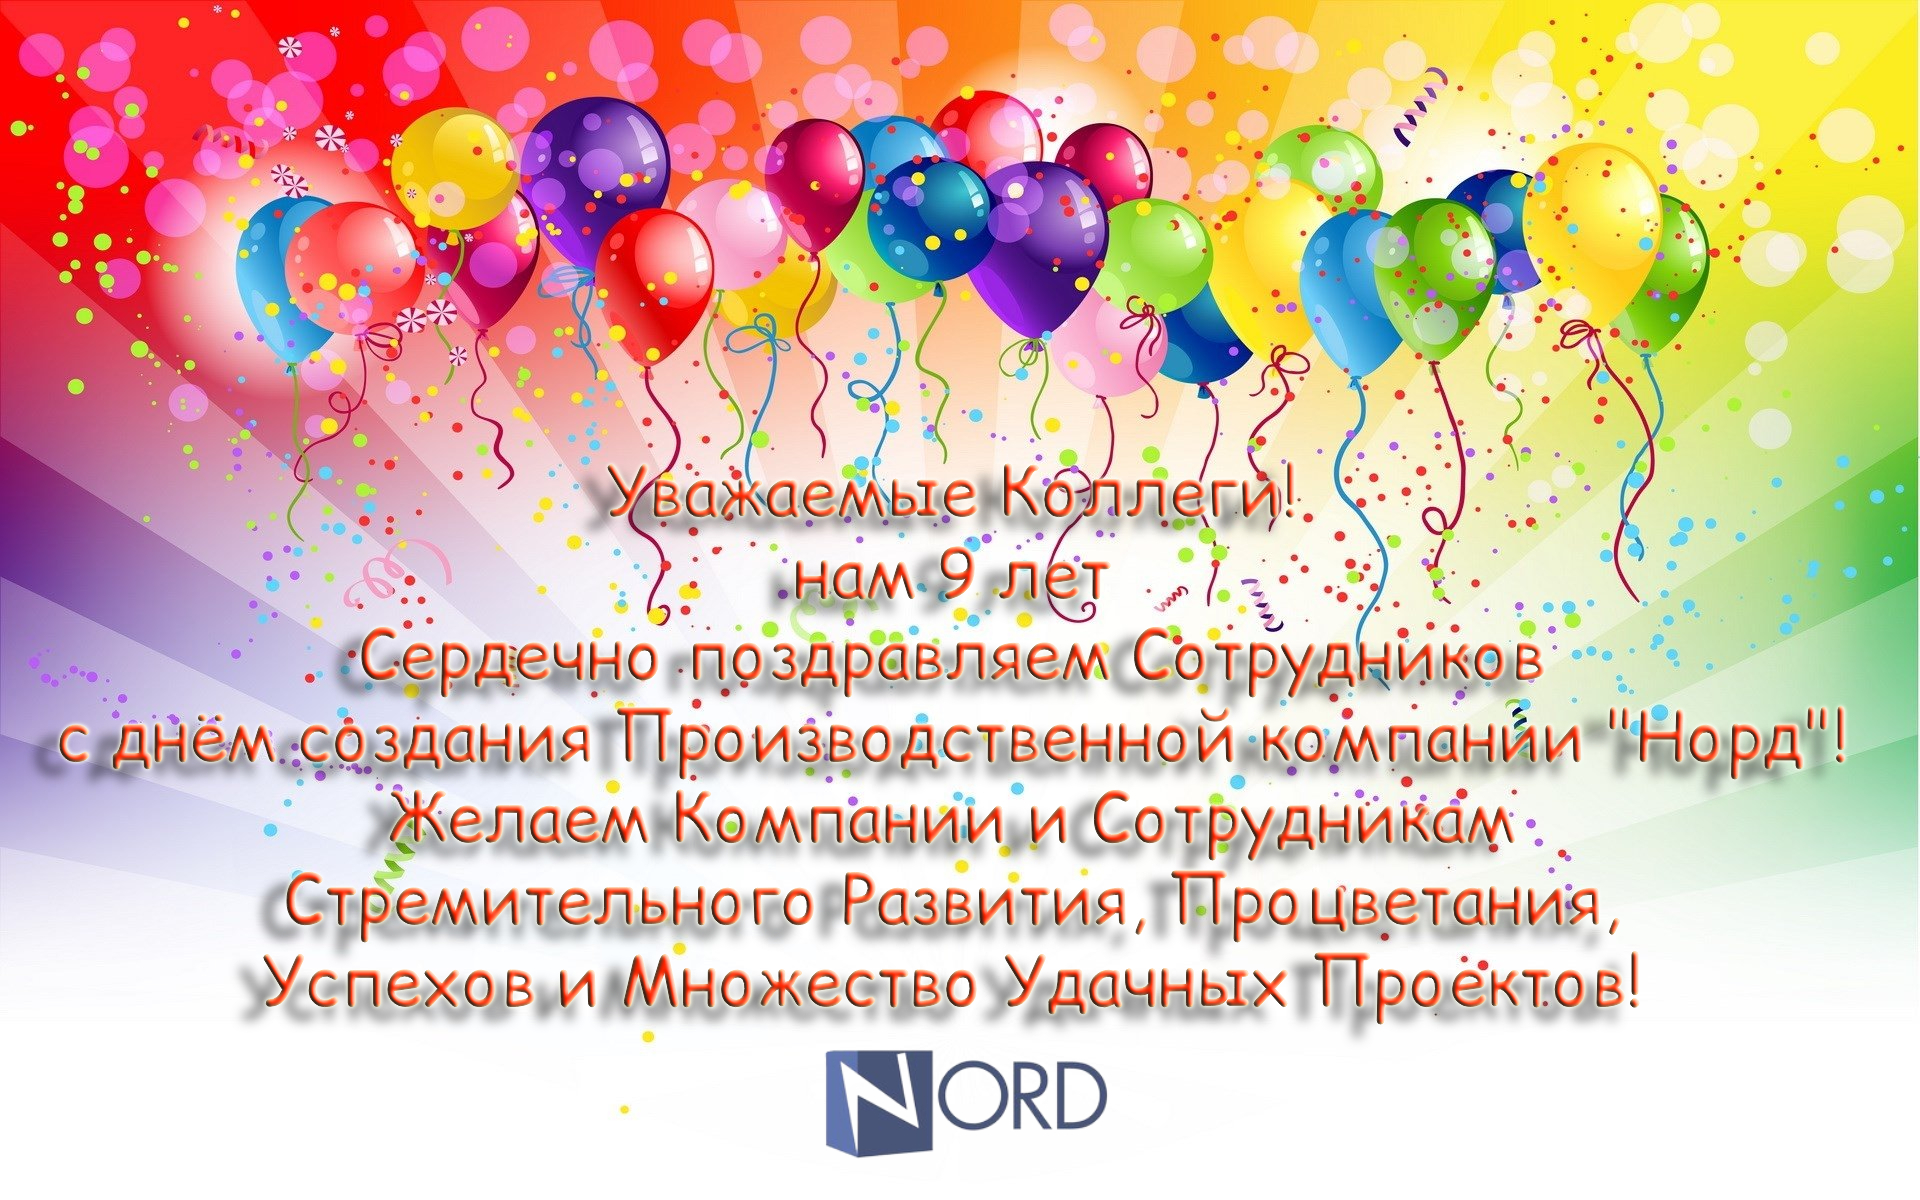 ООО "ПК НОРД" отмечает свой девятый год плодотворной деятельности.